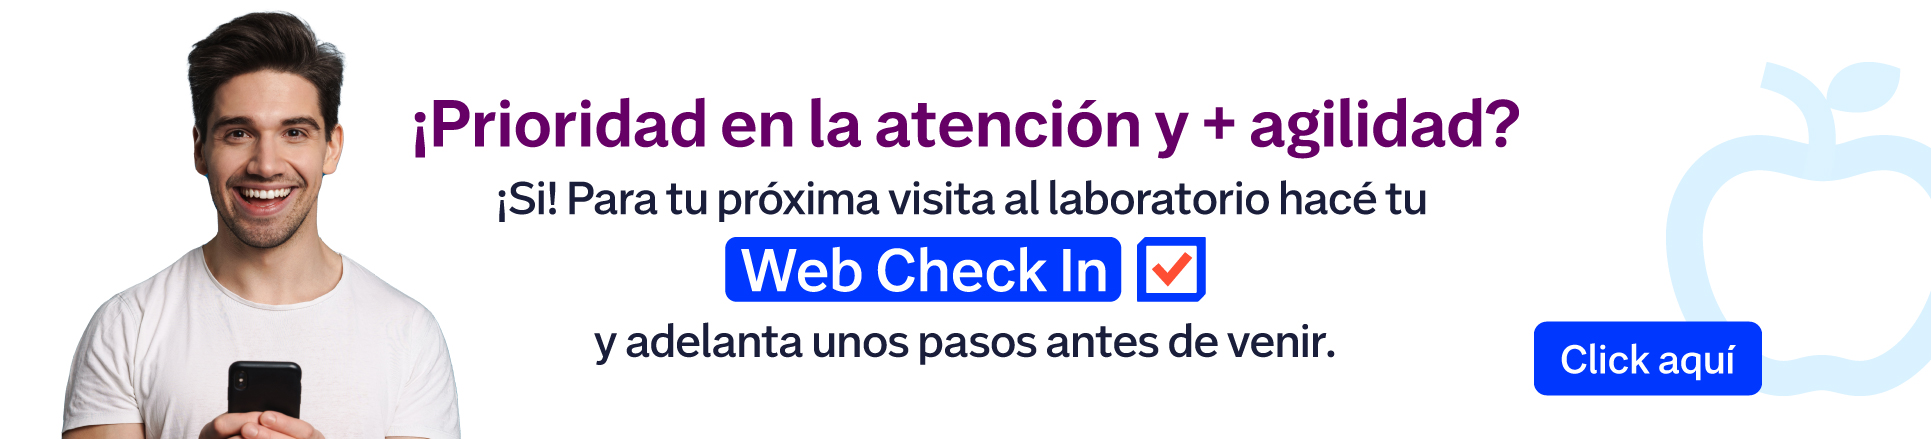 Web check in